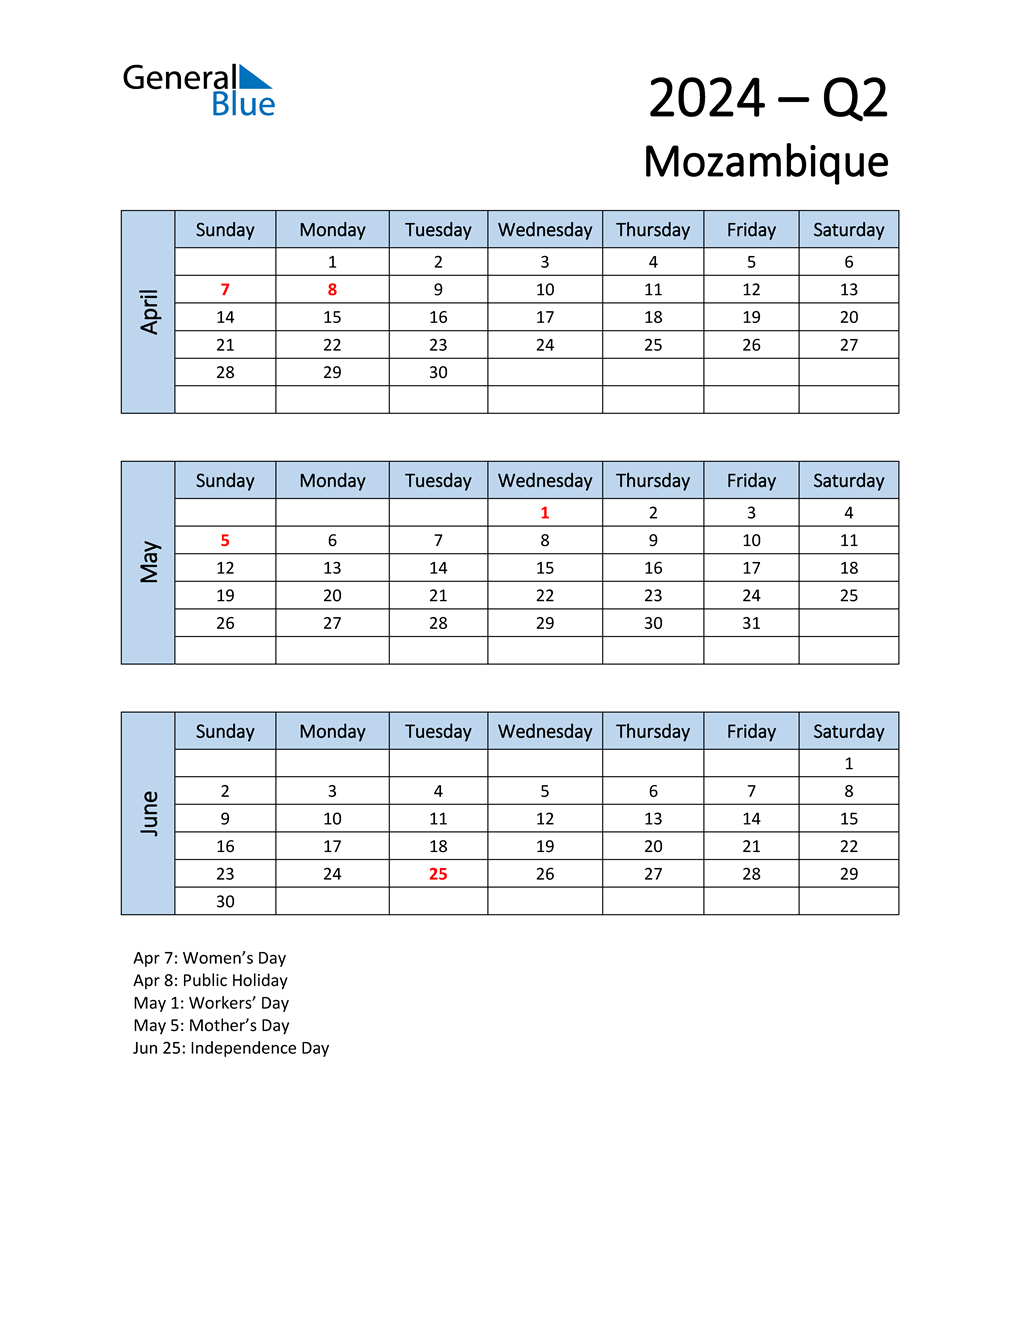  Free Q2 2024 Calendar for Mozambique